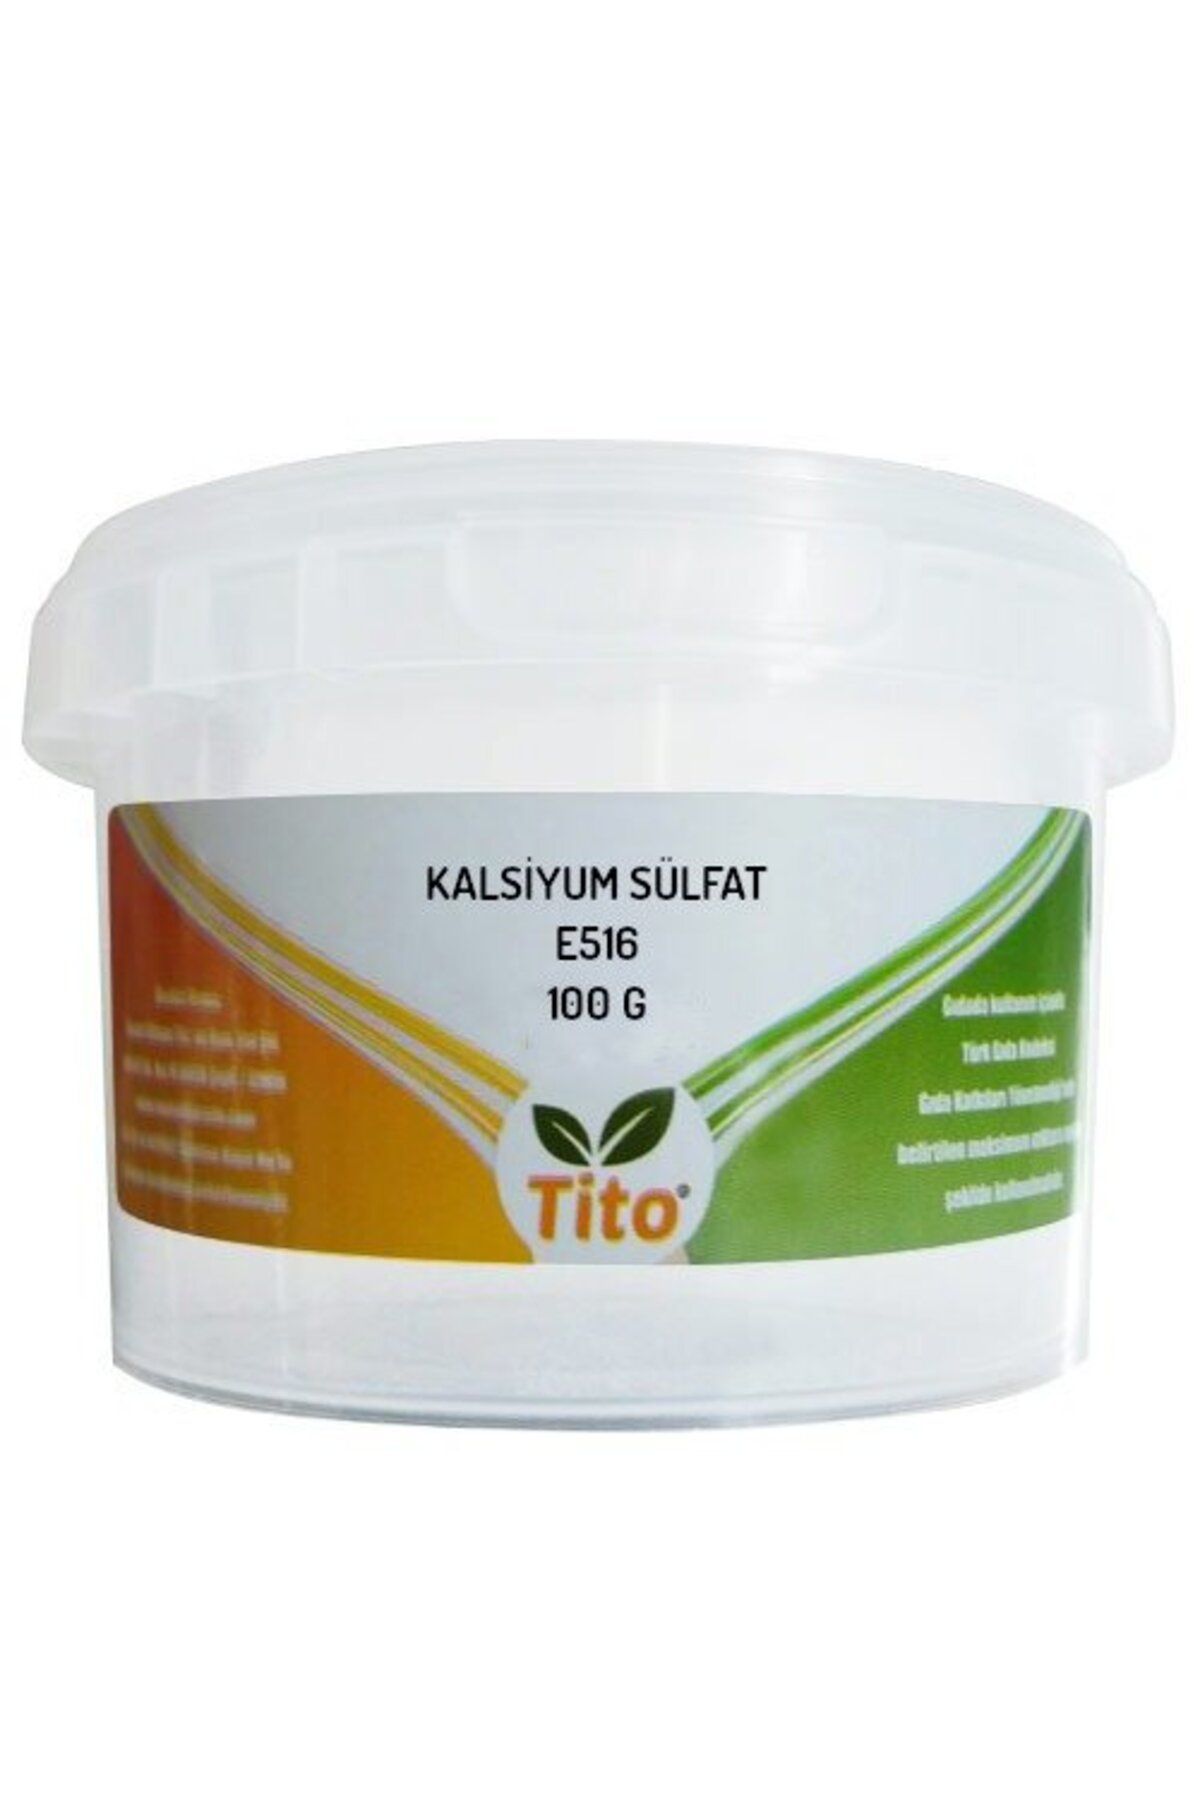 tito Kalsiyum Sülfat E516 100 G